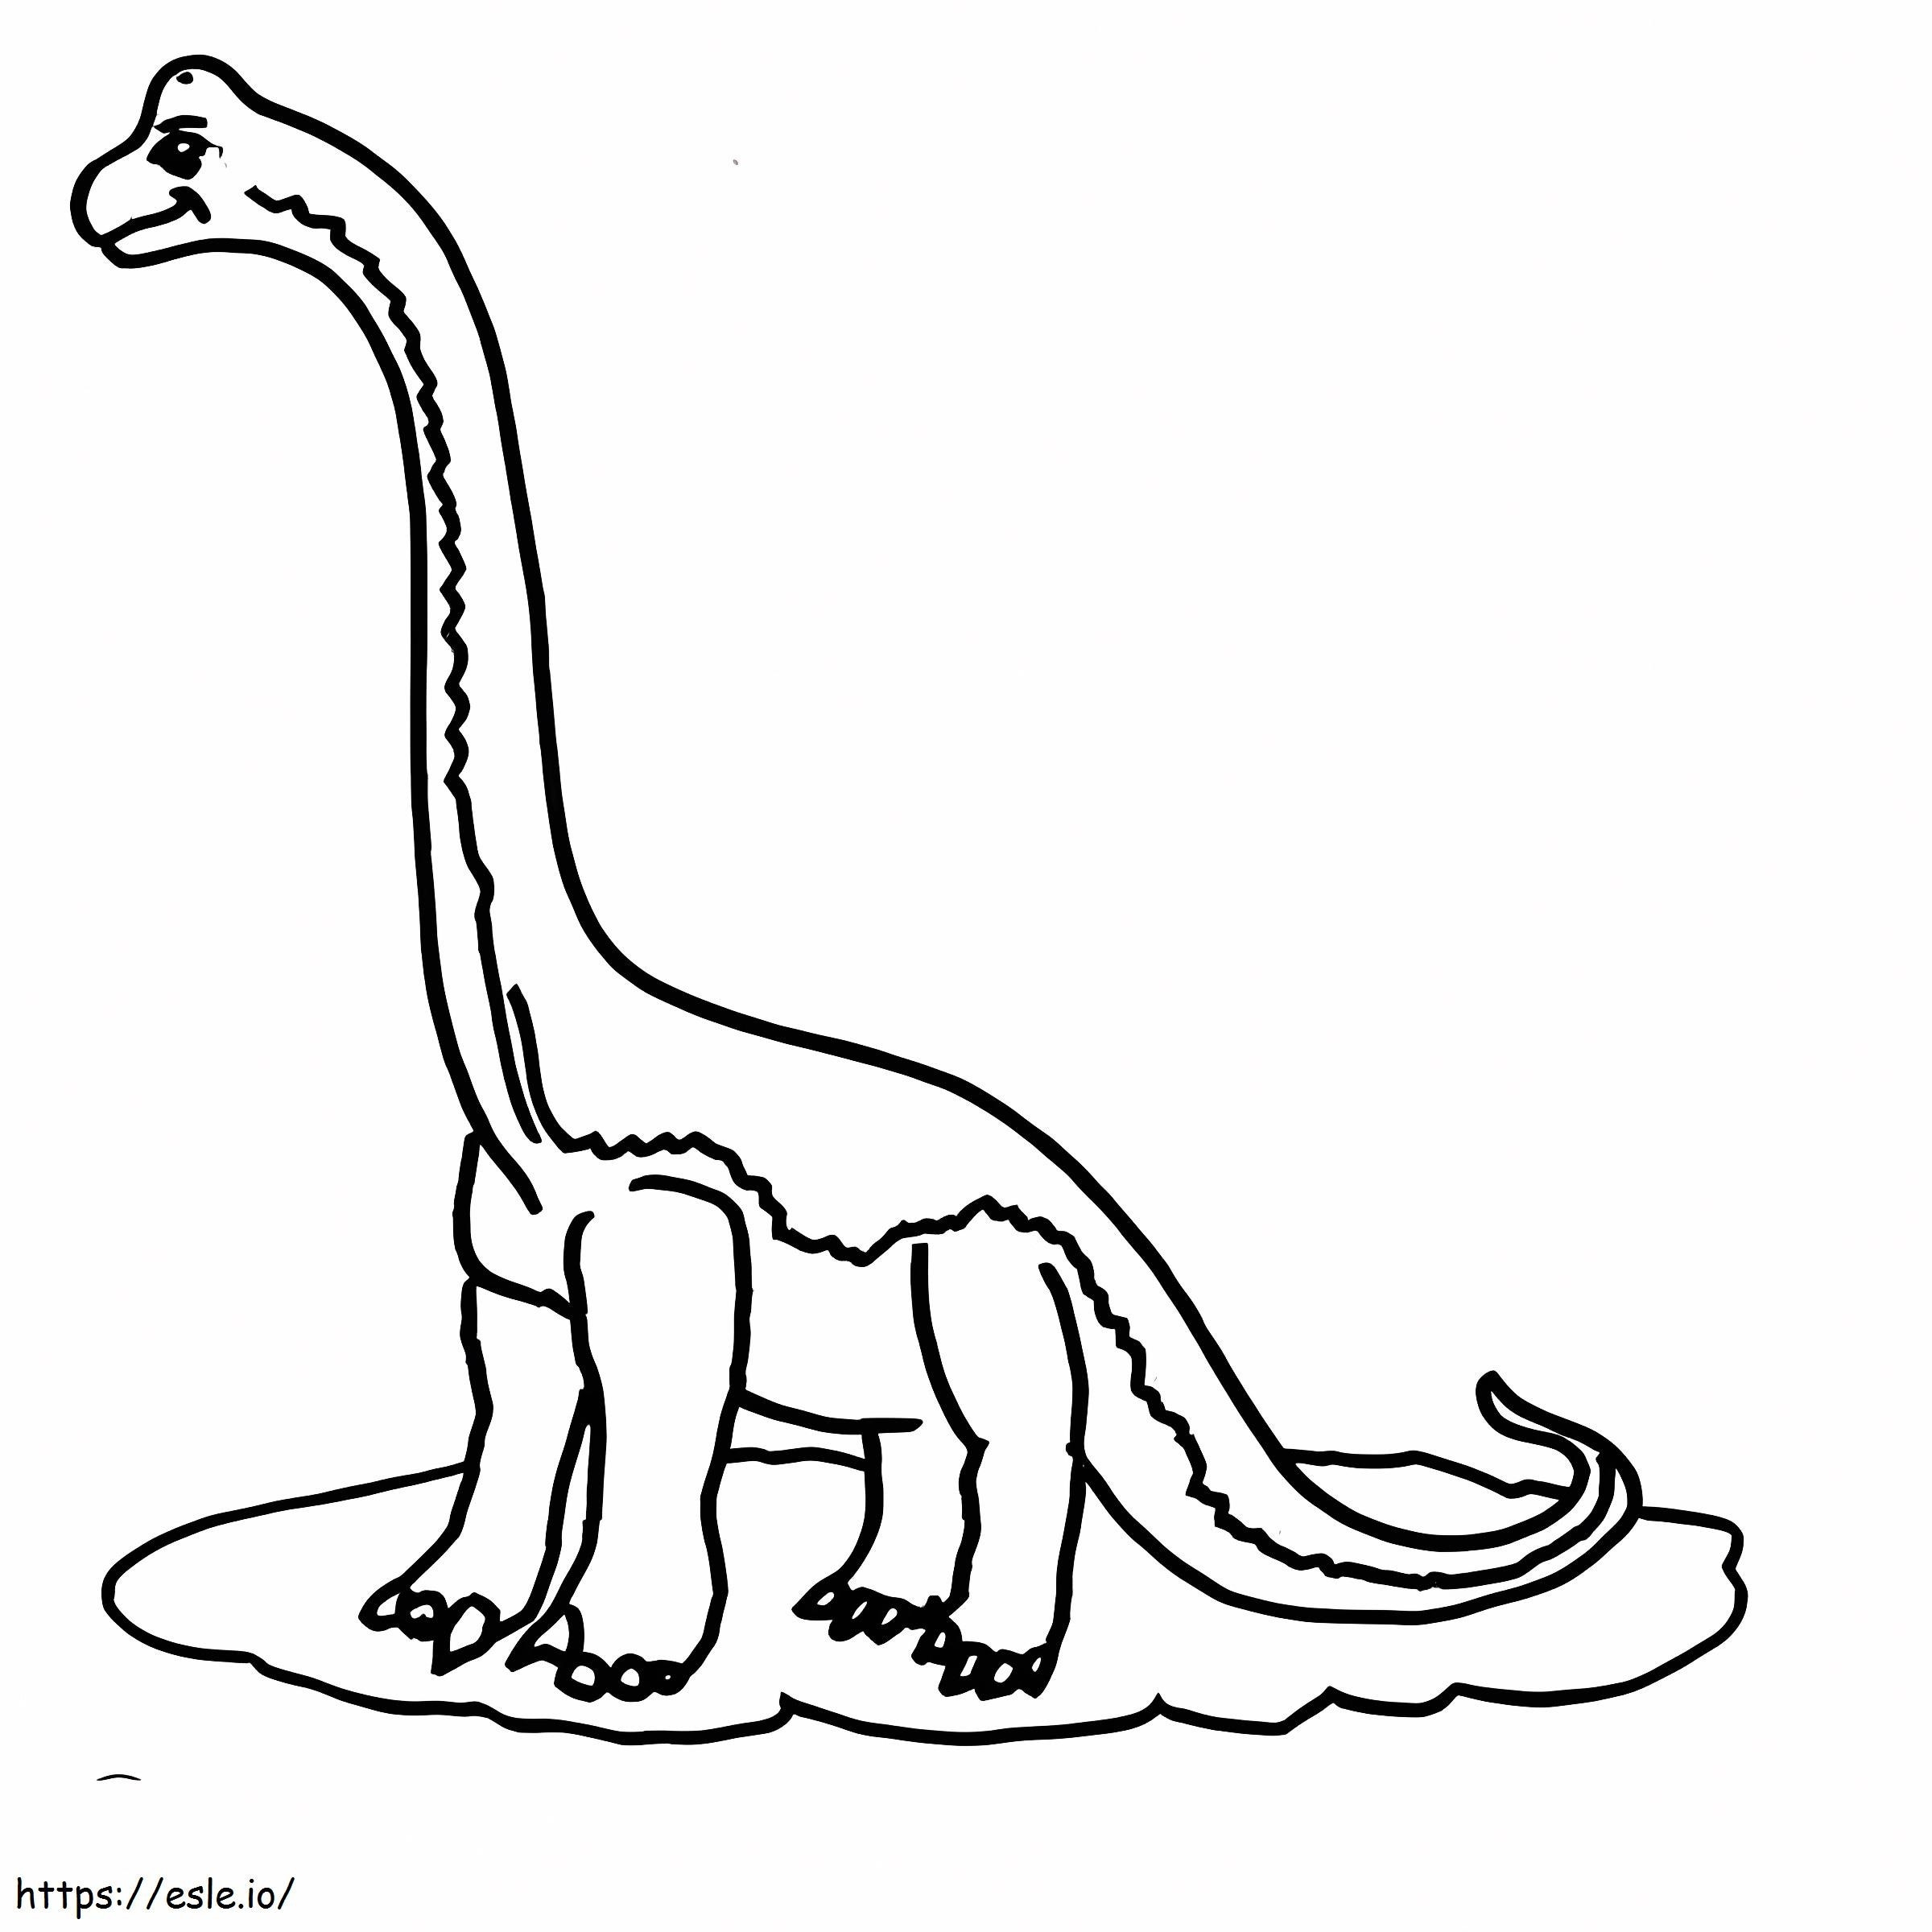 Coloriage Brachiosaure imprimable à imprimer dessin